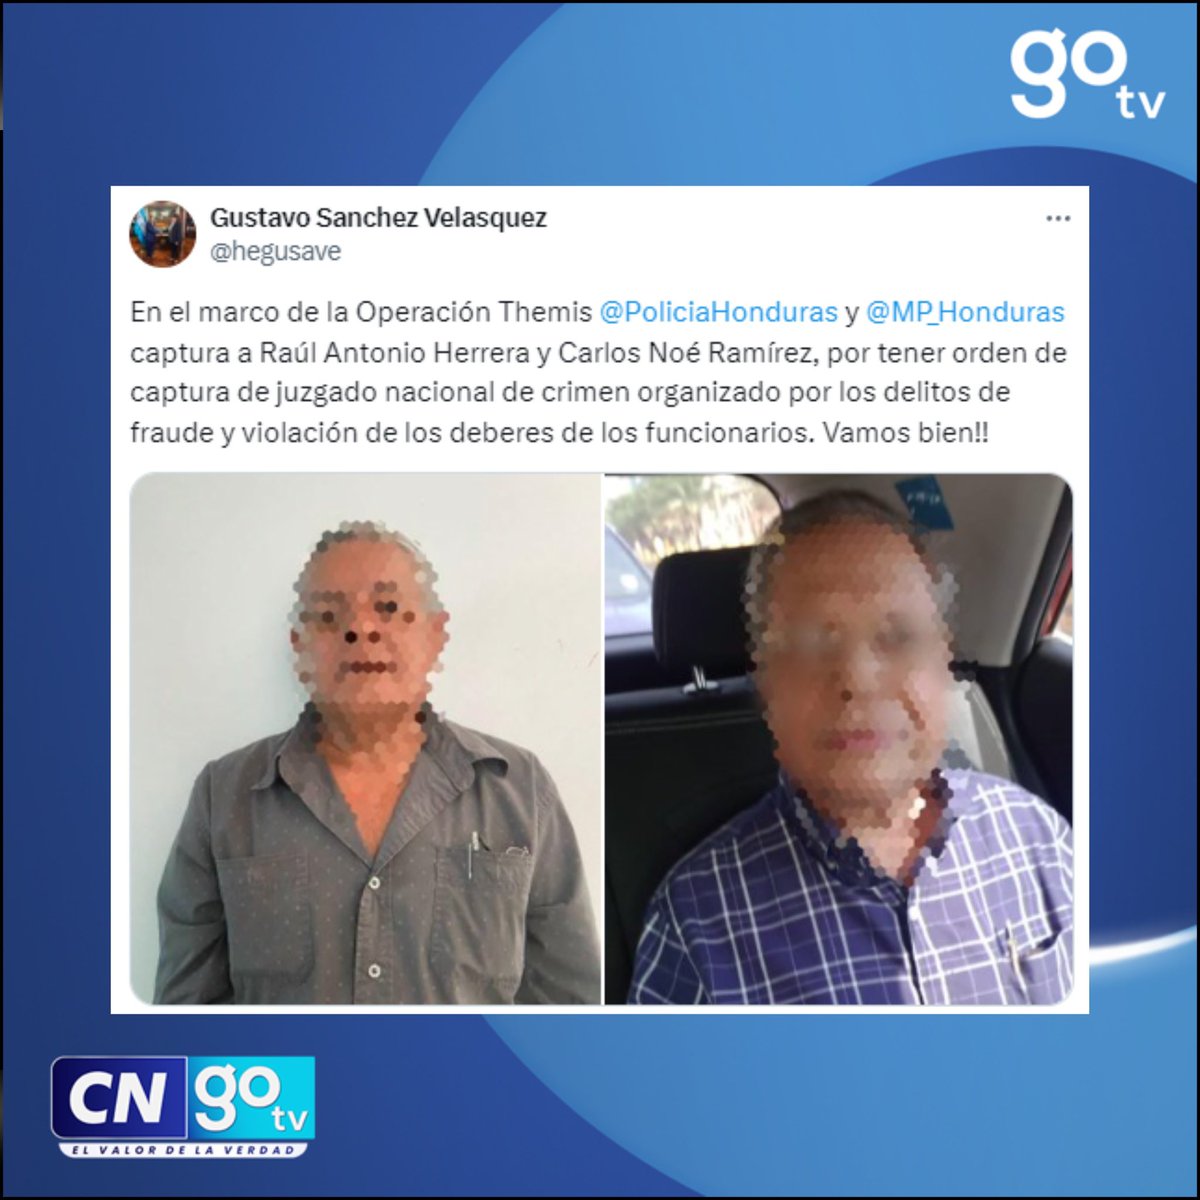 #CNGOTV 🔴Ministro de Seguridad Gustavo Sánchez en ella marco de la Operación Themis dio a conocer la captura a Raúl Herrera y Carlos Ramírez.

#Seguridad #PoliciaNacional #OperacionThemis